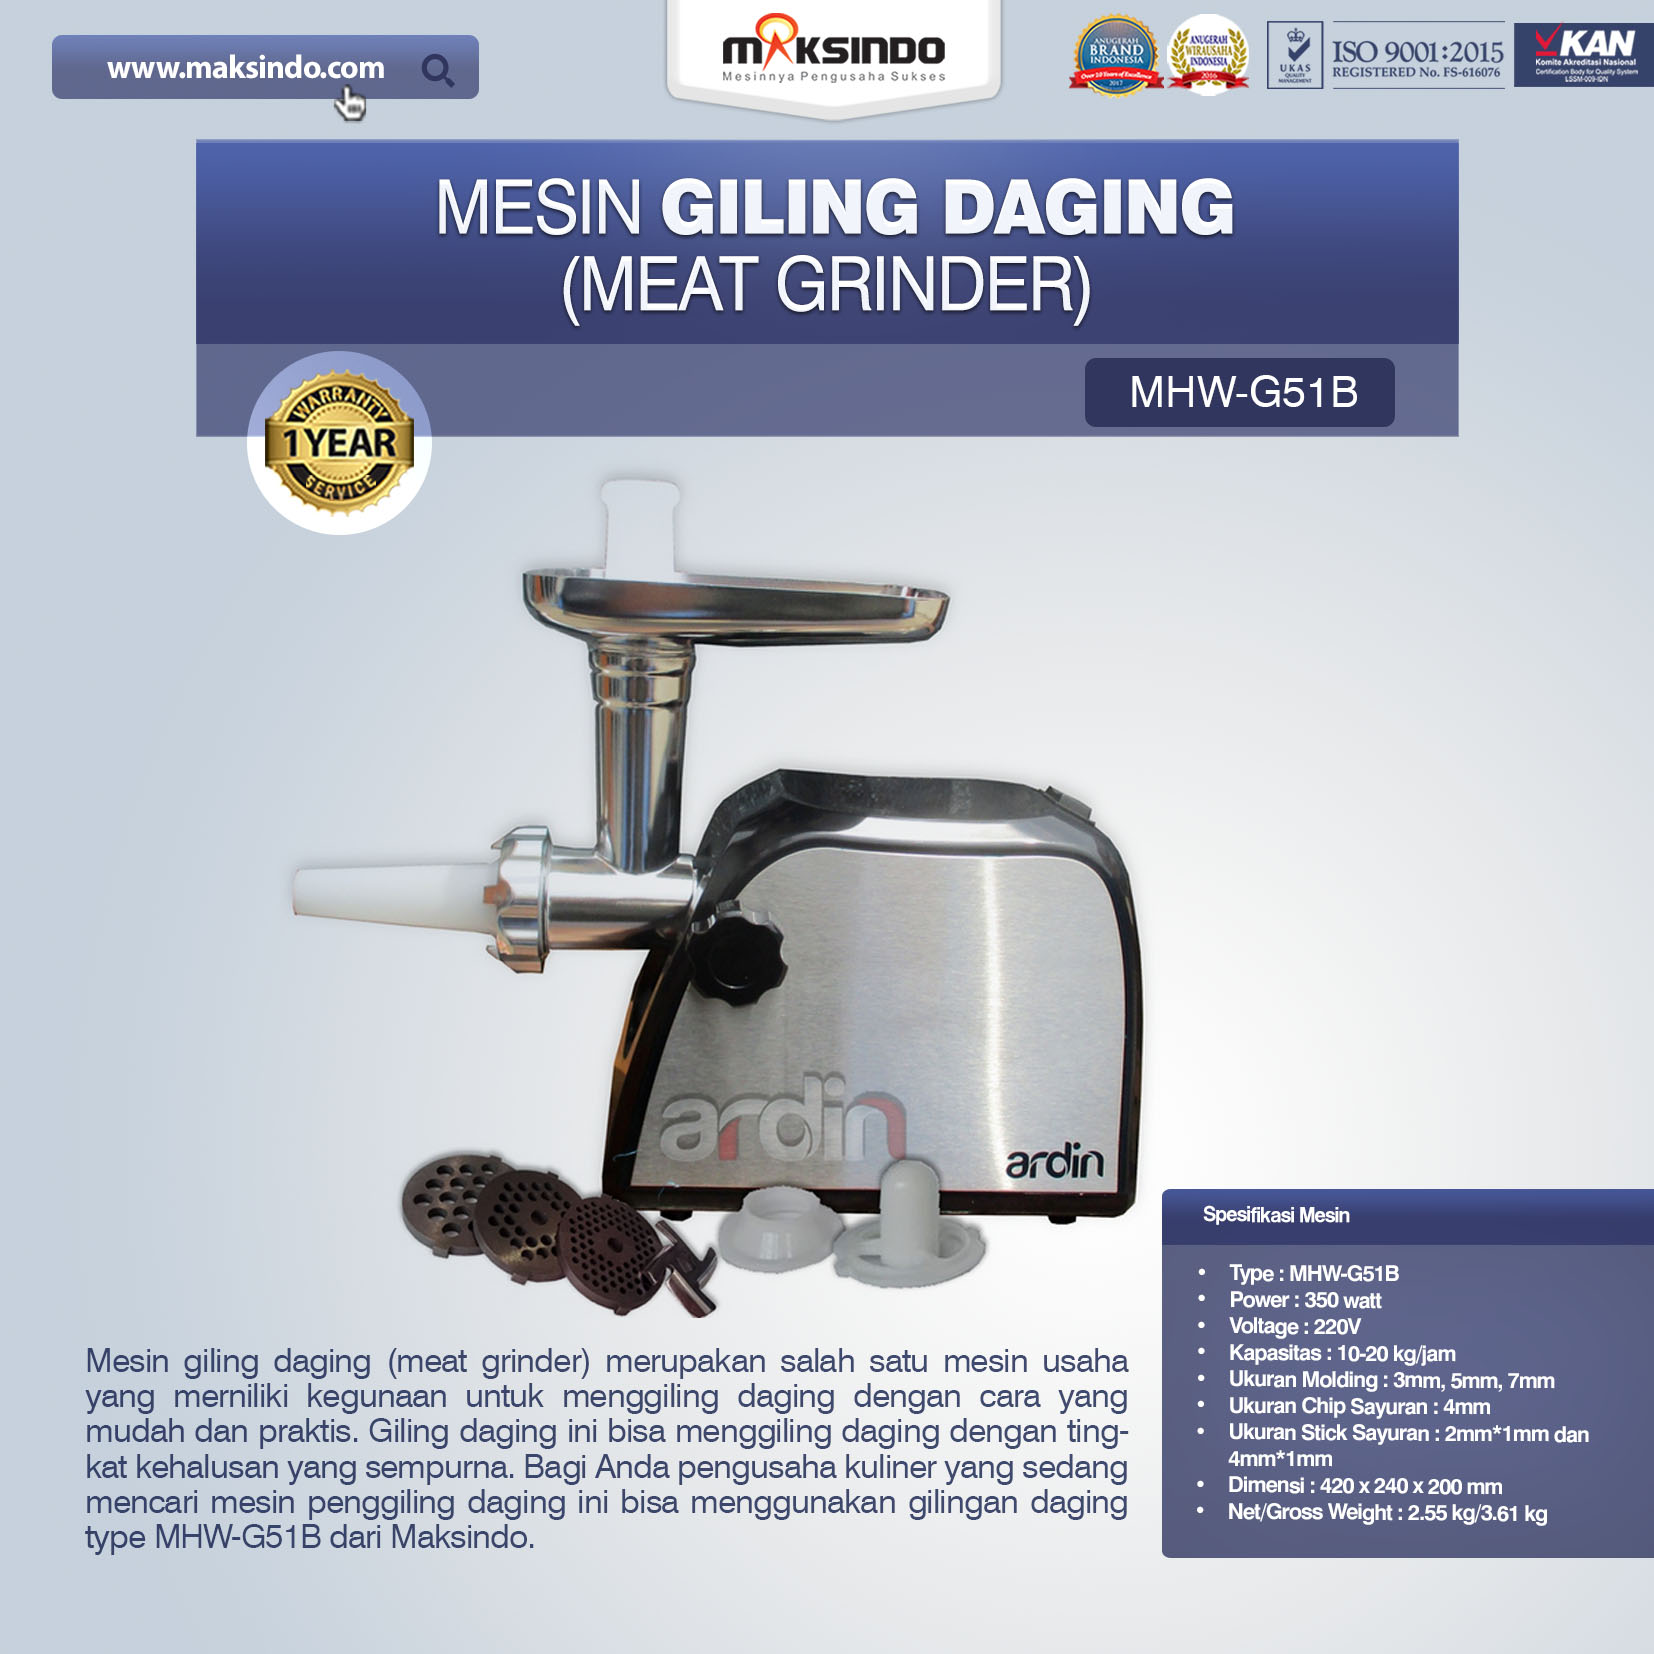 Jual Mesin Giling Daging (Meat Grinder) MHW-G51B di Semarang